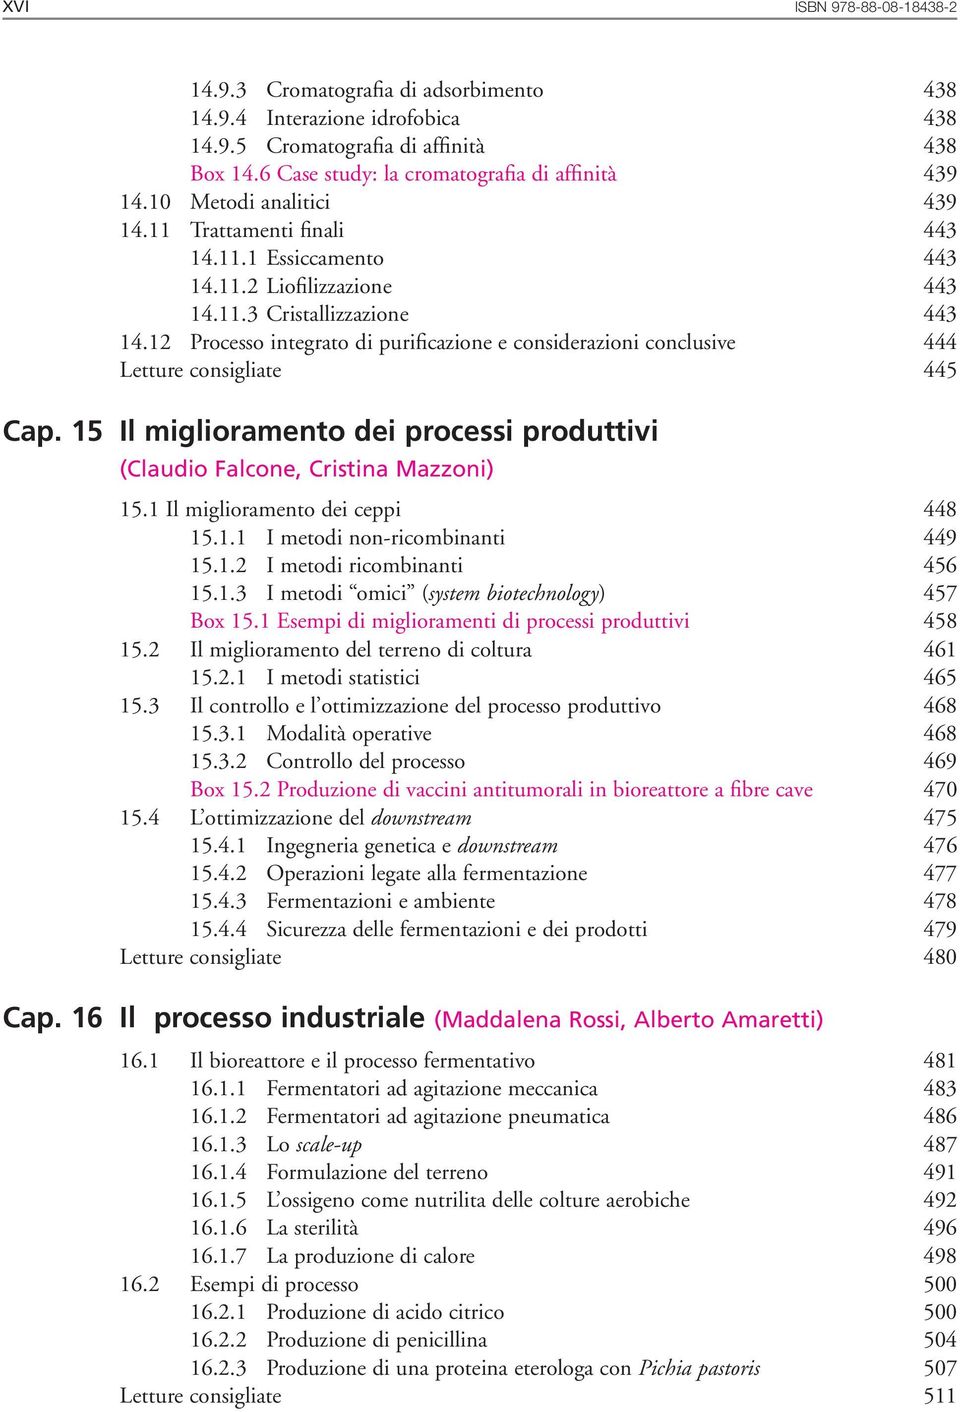 12 Processo integrato di purificazione e considerazioni conclusive 444 Letture consigliate 445 Cap. 15 Il miglioramento dei processi produttivi (Claudio Falcone, Cristina Mazzoni) 15.